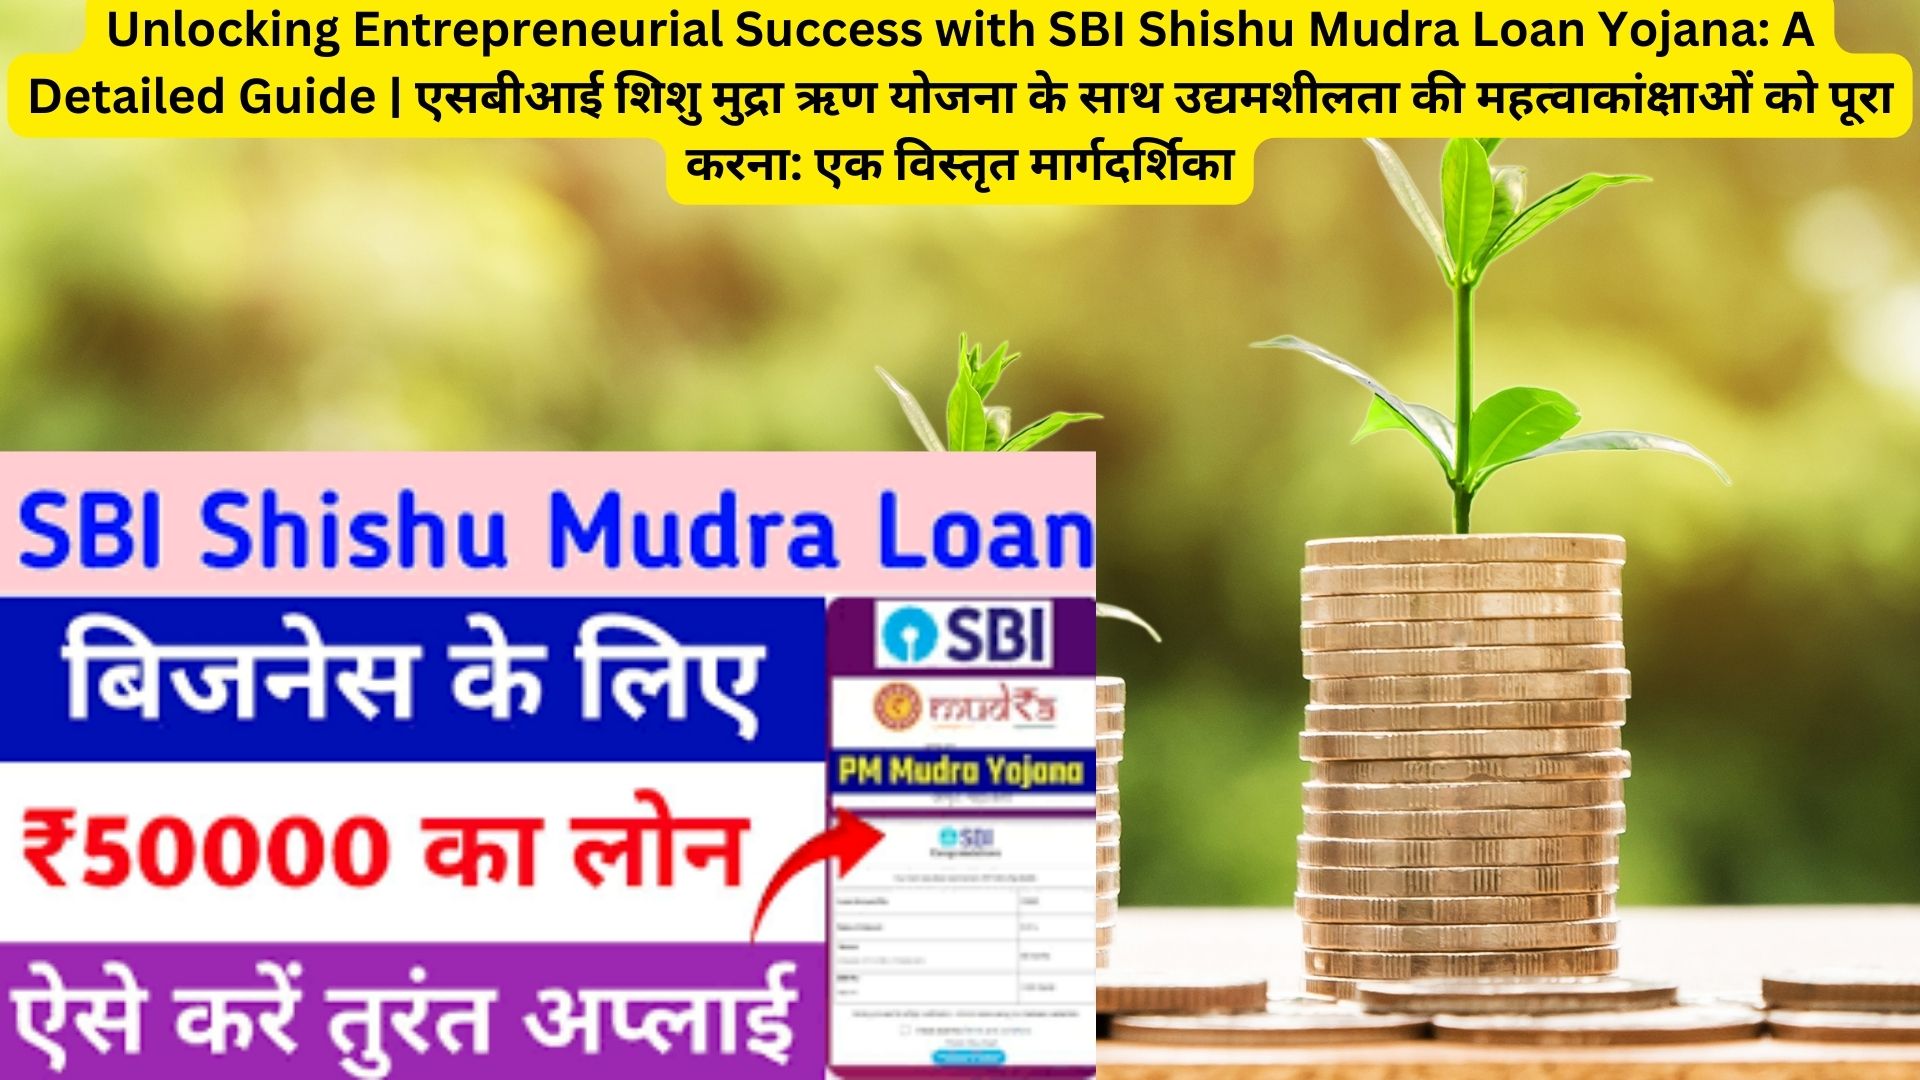 Unlocking Entrepreneurial Success with SBI Shishu Mudra Loan Yojana: A Detailed Guide | एसबीआई शिशु मुद्रा ऋण योजना के साथ उद्यमशीलता की महत्वाकांक्षाओं को पूरा करना: एक विस्तृत मार्गदर्शिका